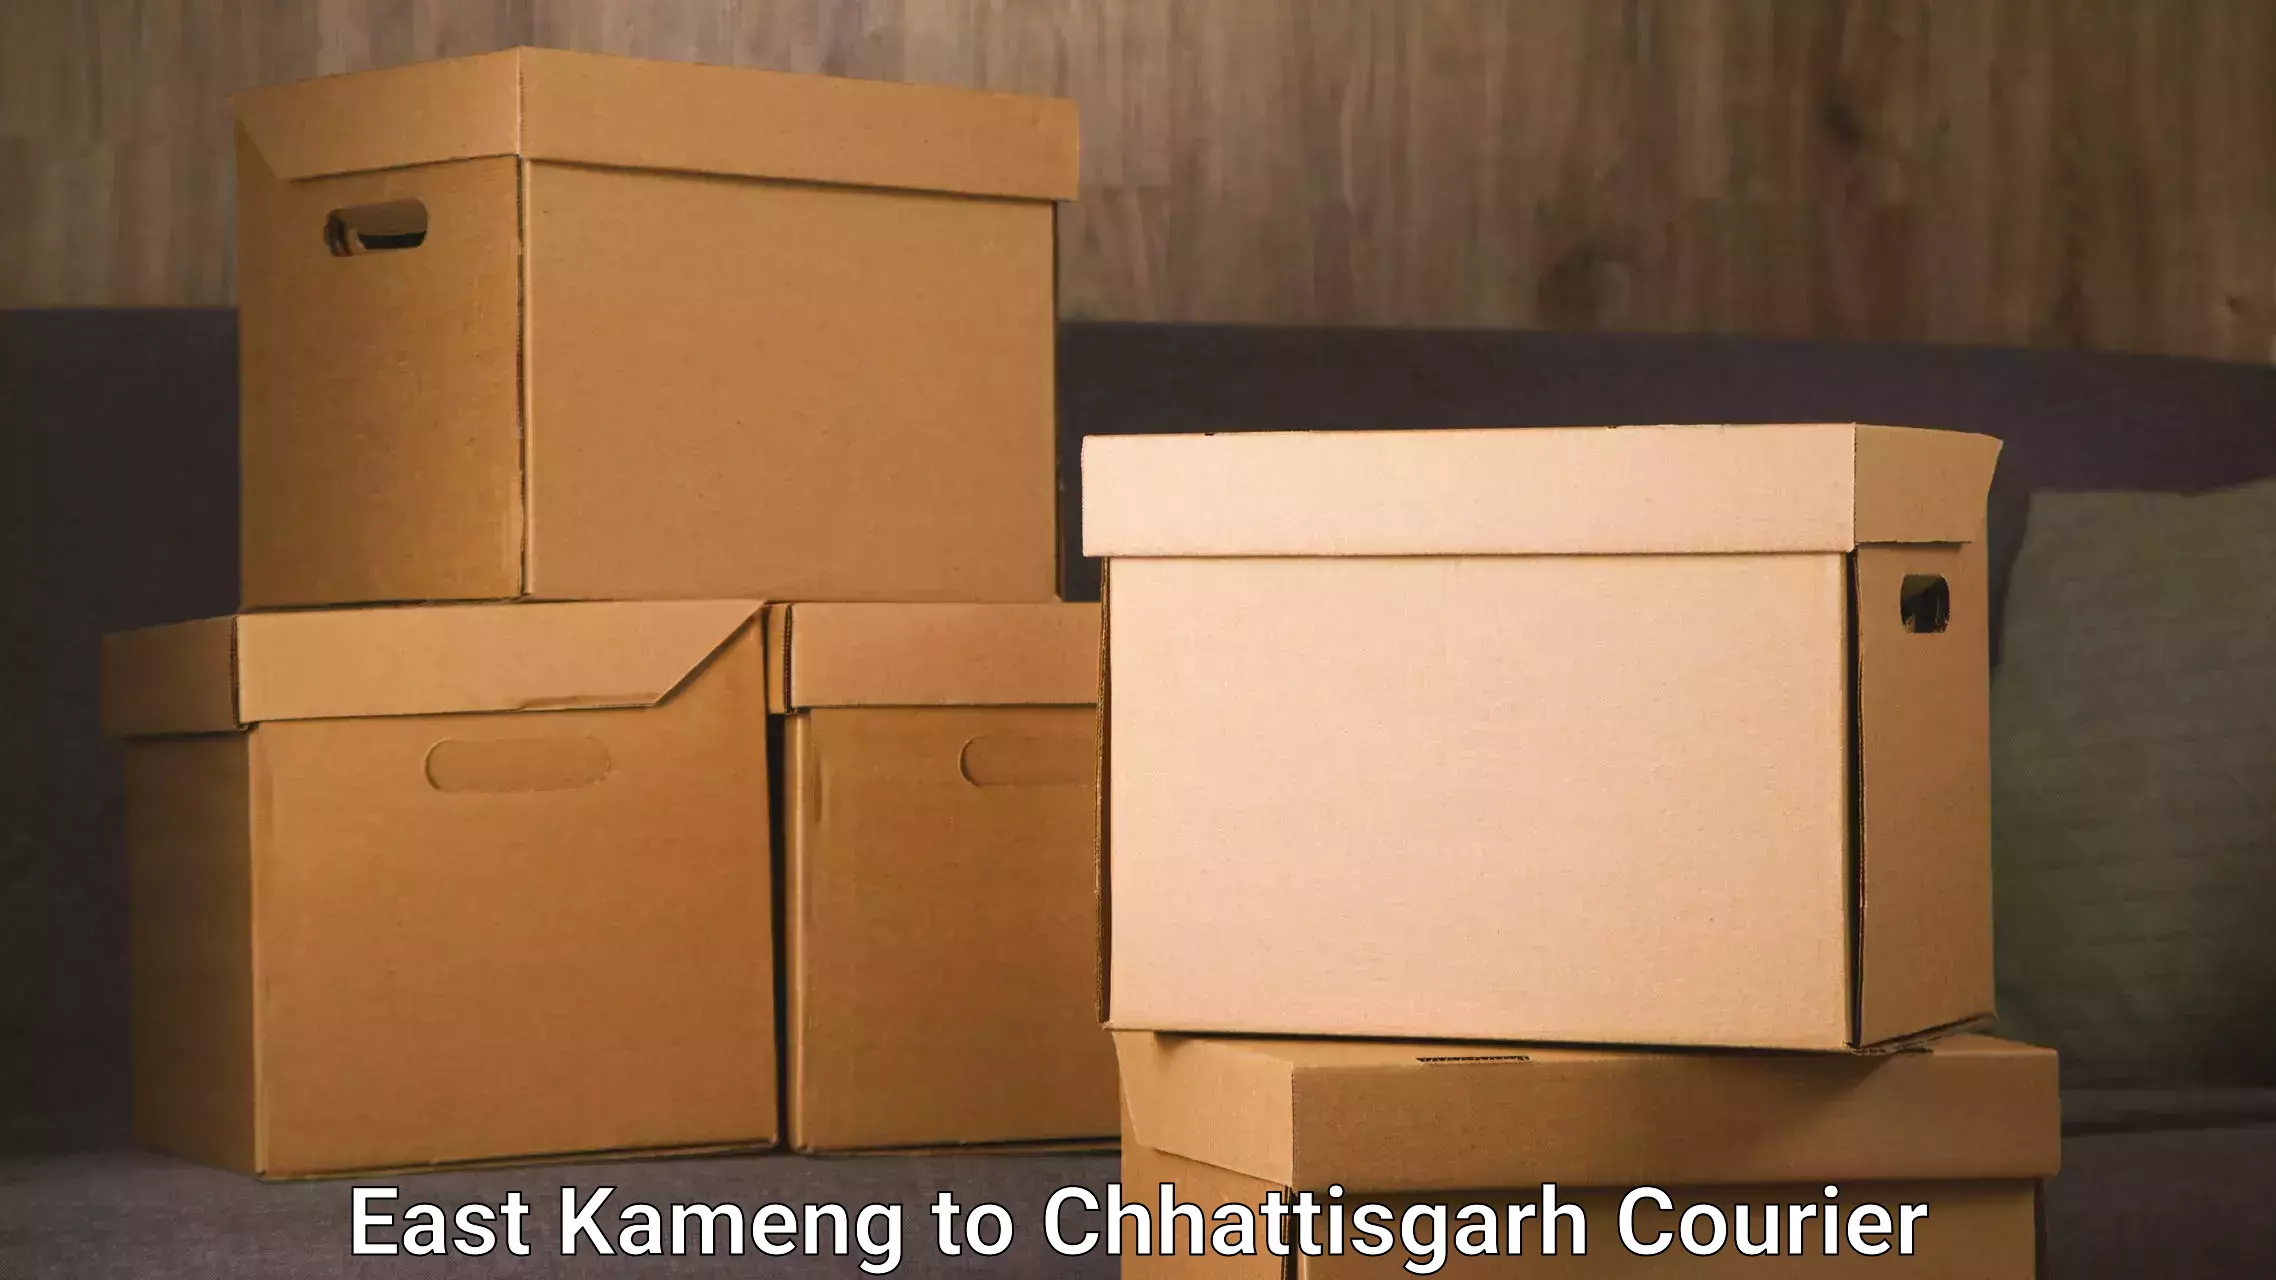 Express logistics providers East Kameng to Ramanujganj